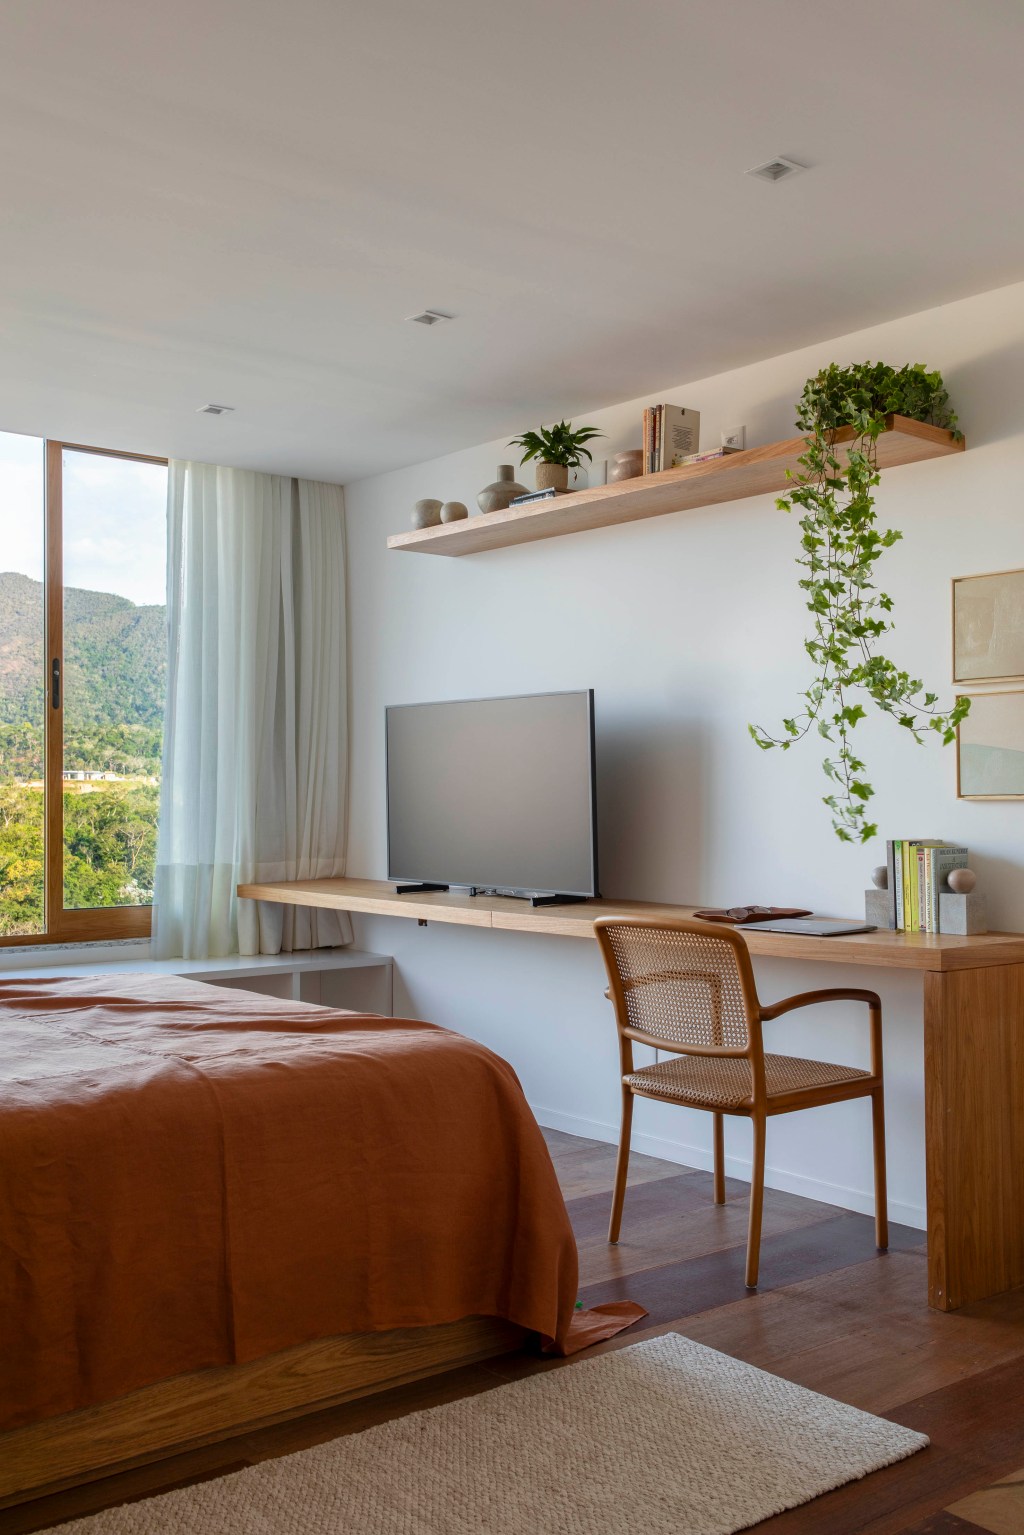 Casa de campo de 800 m² em Petrópolis ganha décor com cara de montanha. Projeto de João Panaggio. Na foto, quarto de casal com tv e vista para a natureza.